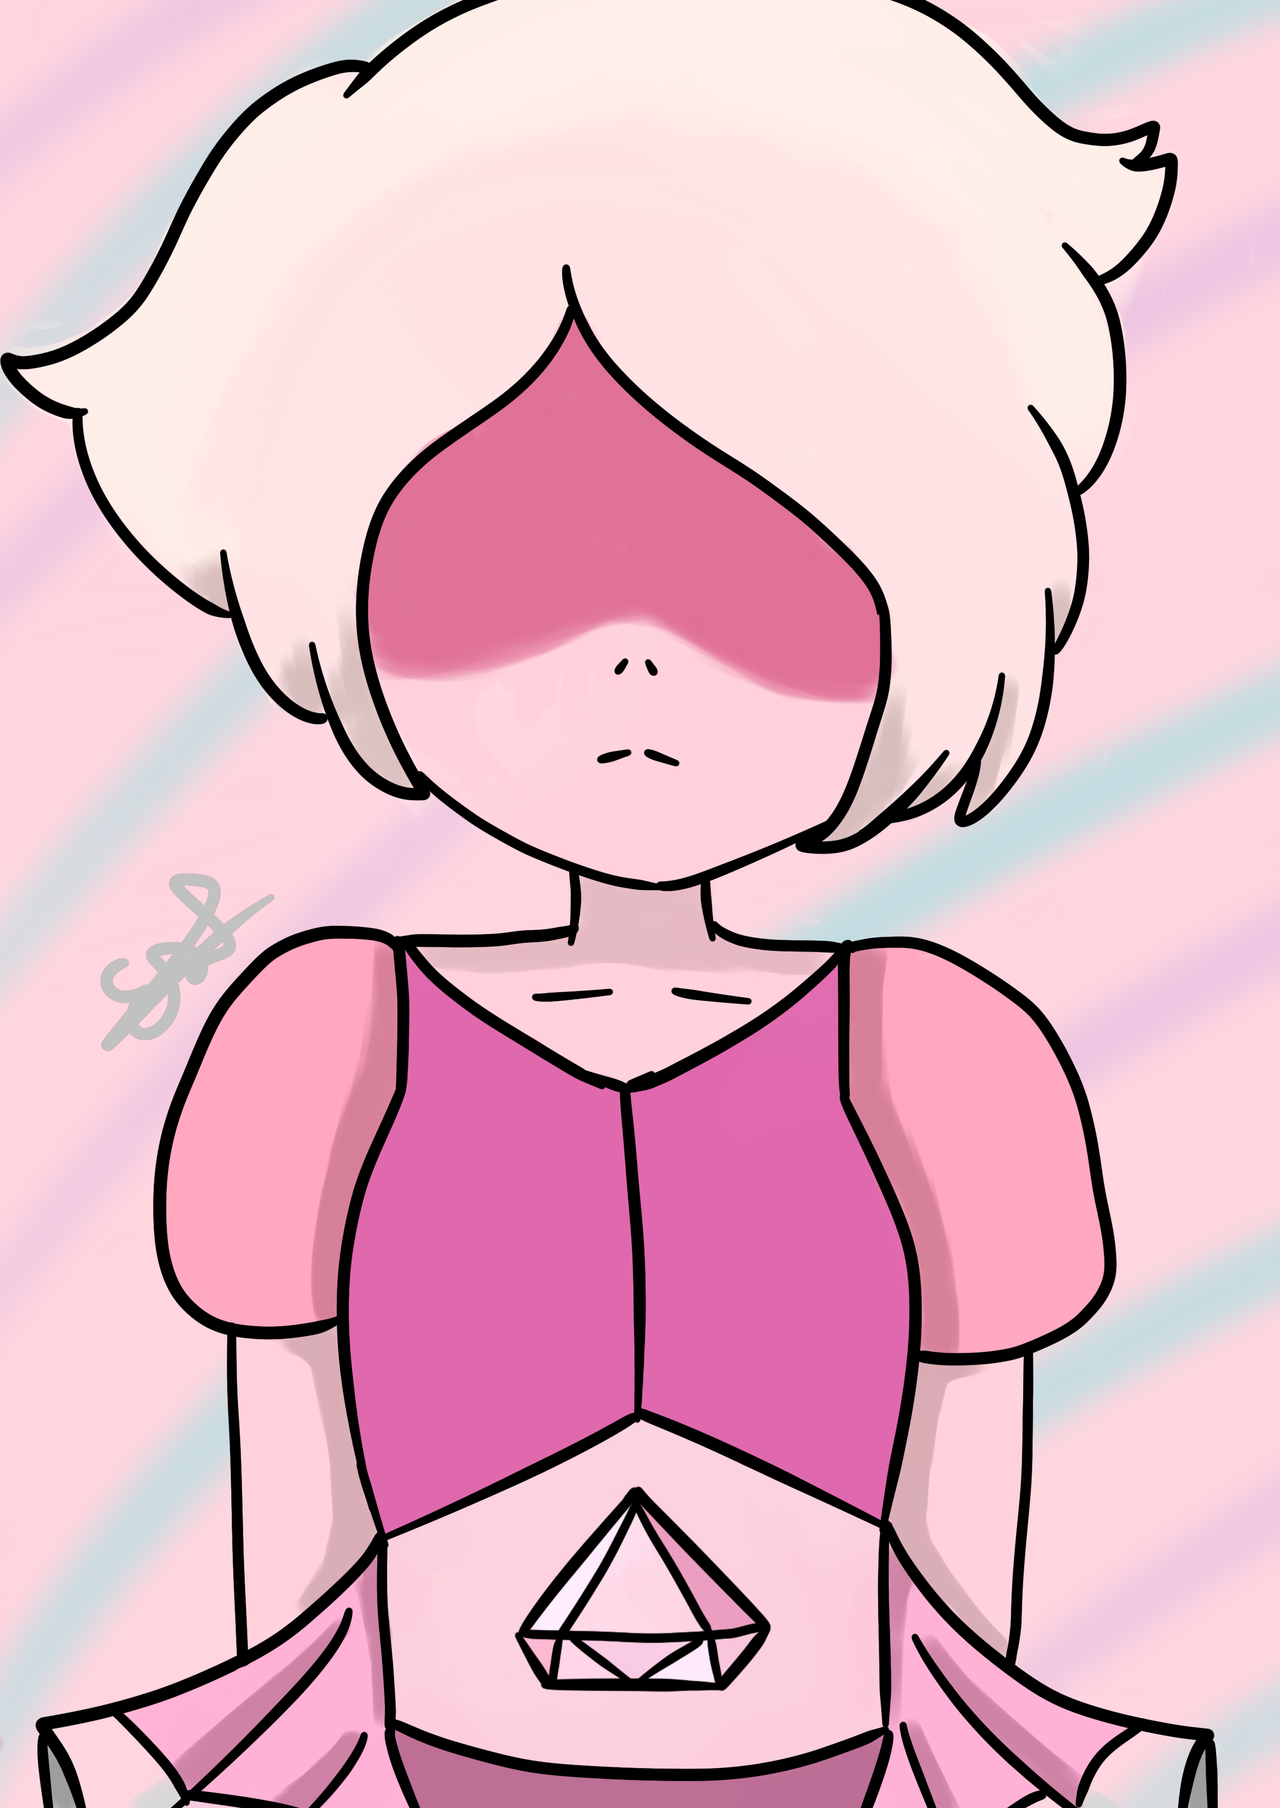 a pink diamond drawing :3